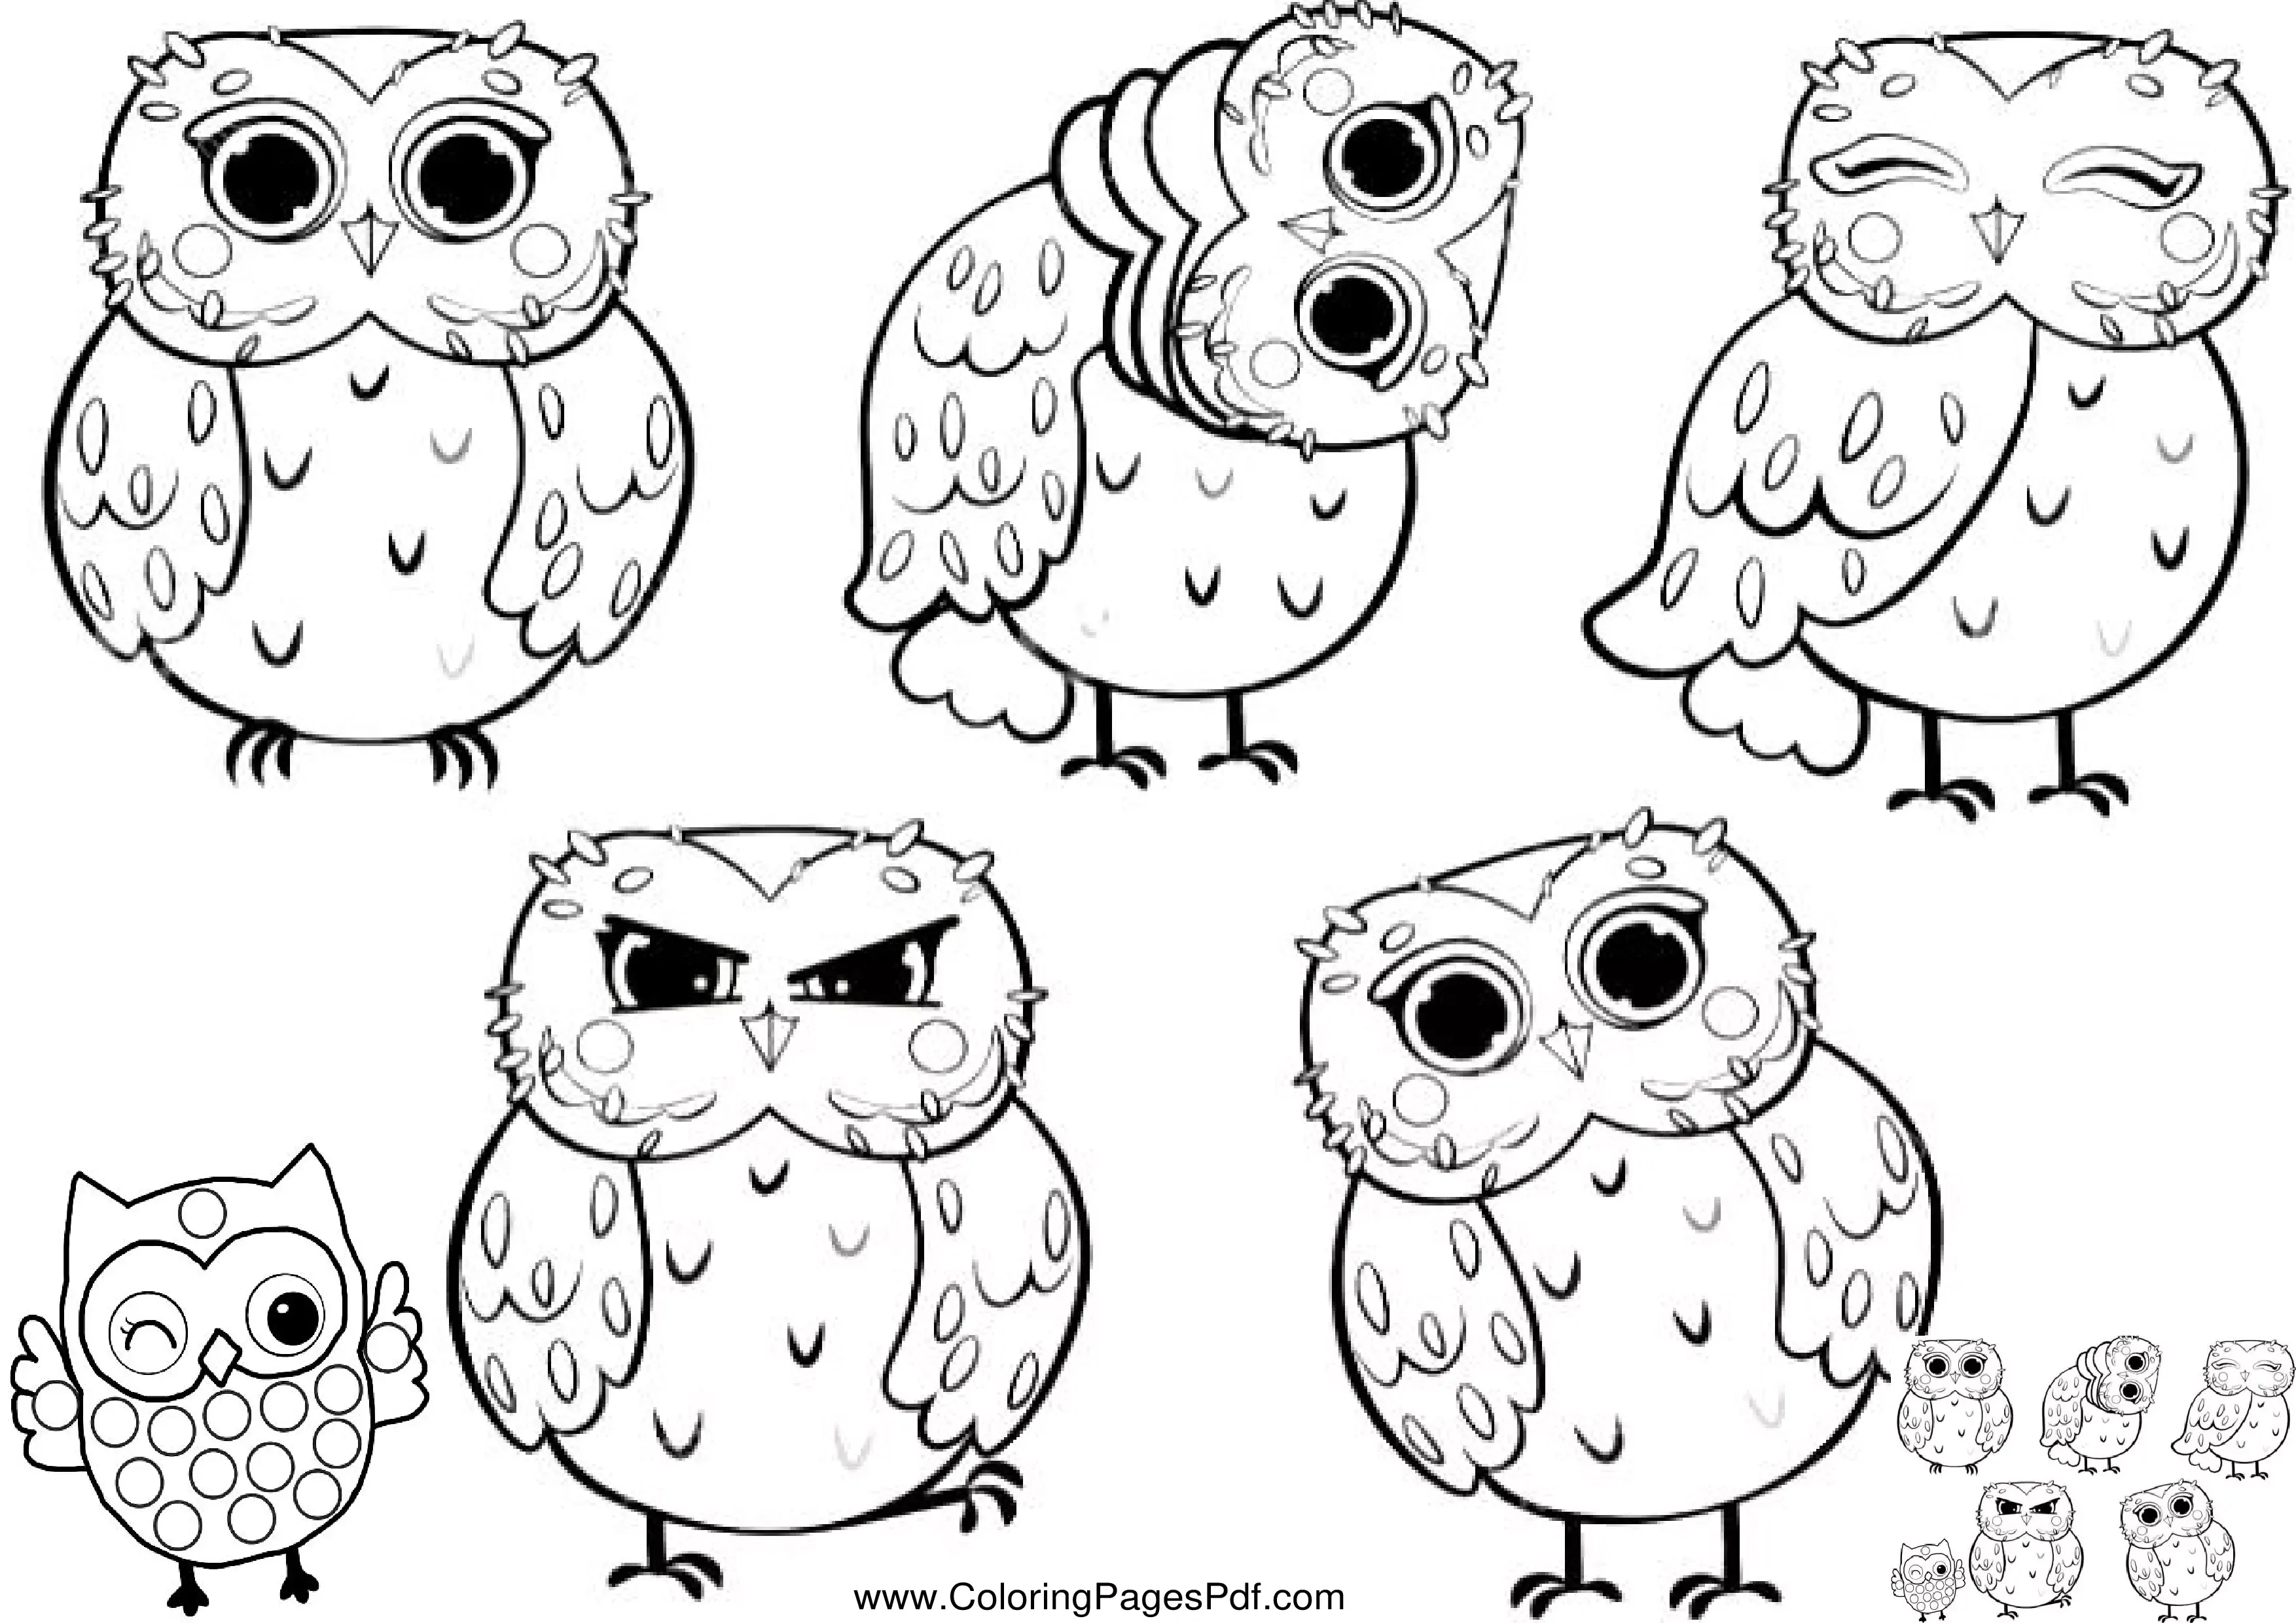 Owl coloring sheet pdf